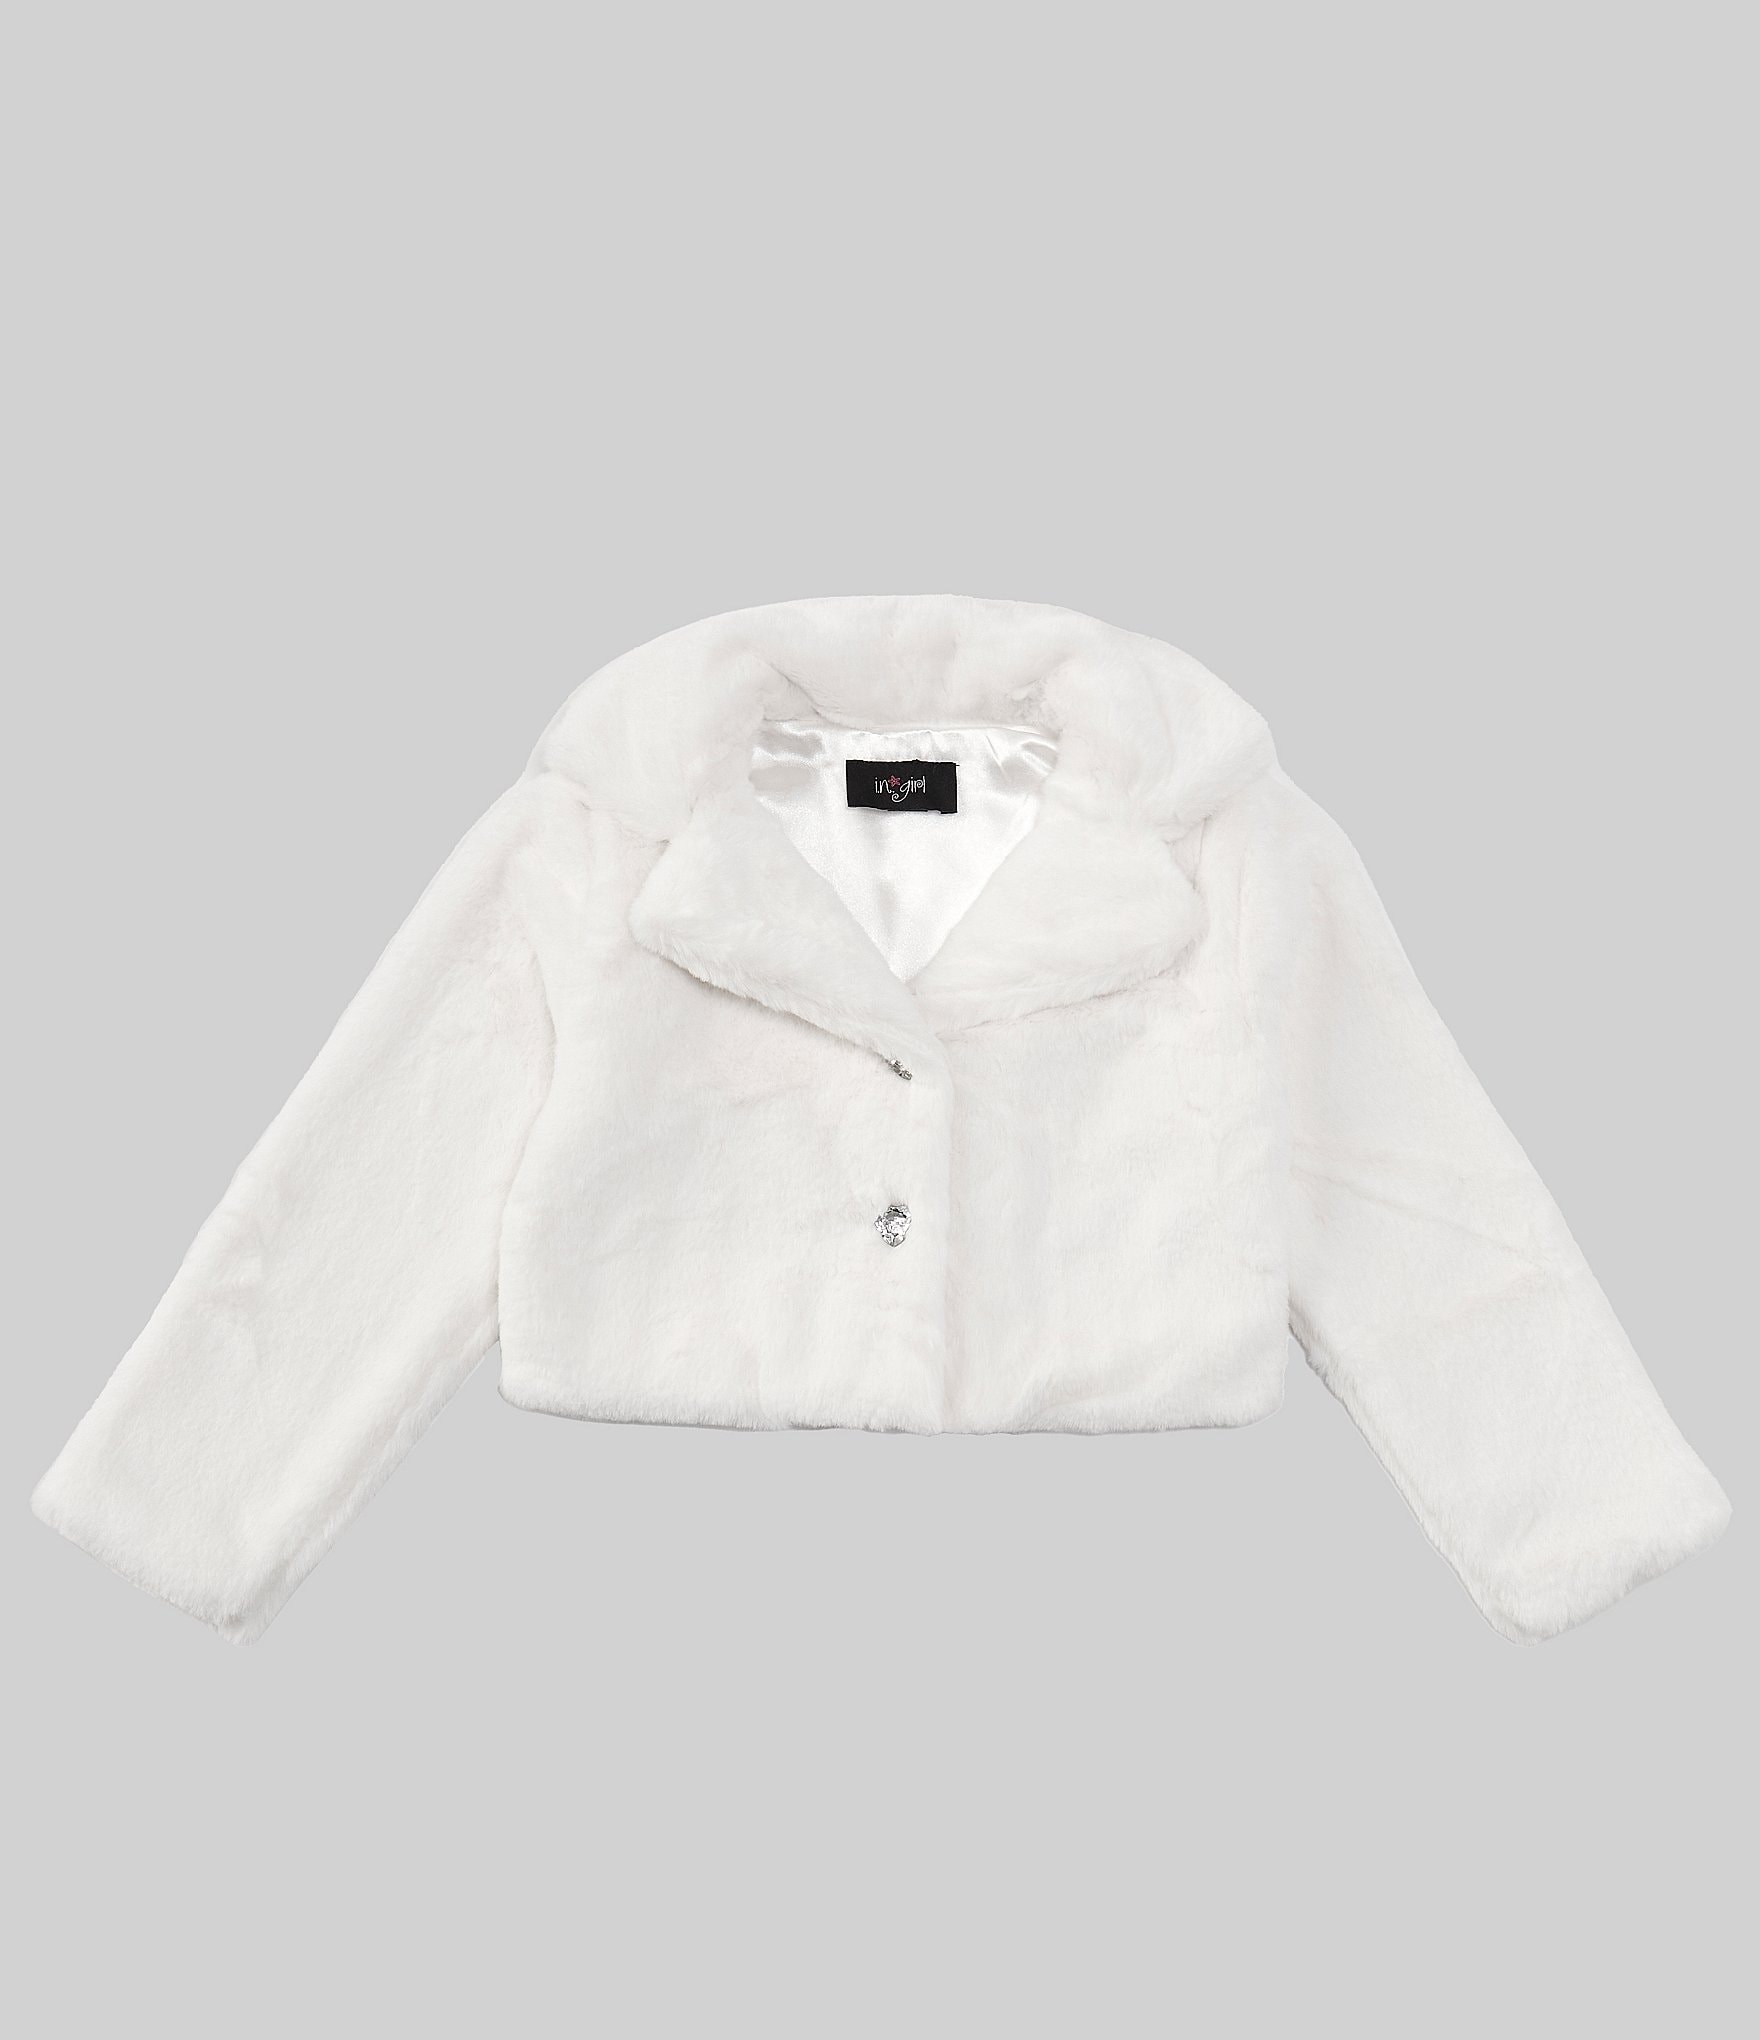 I.N. Girl Little Girls 4-6X Long Sleeve Solid Faux Fur Jacket | Dillard's